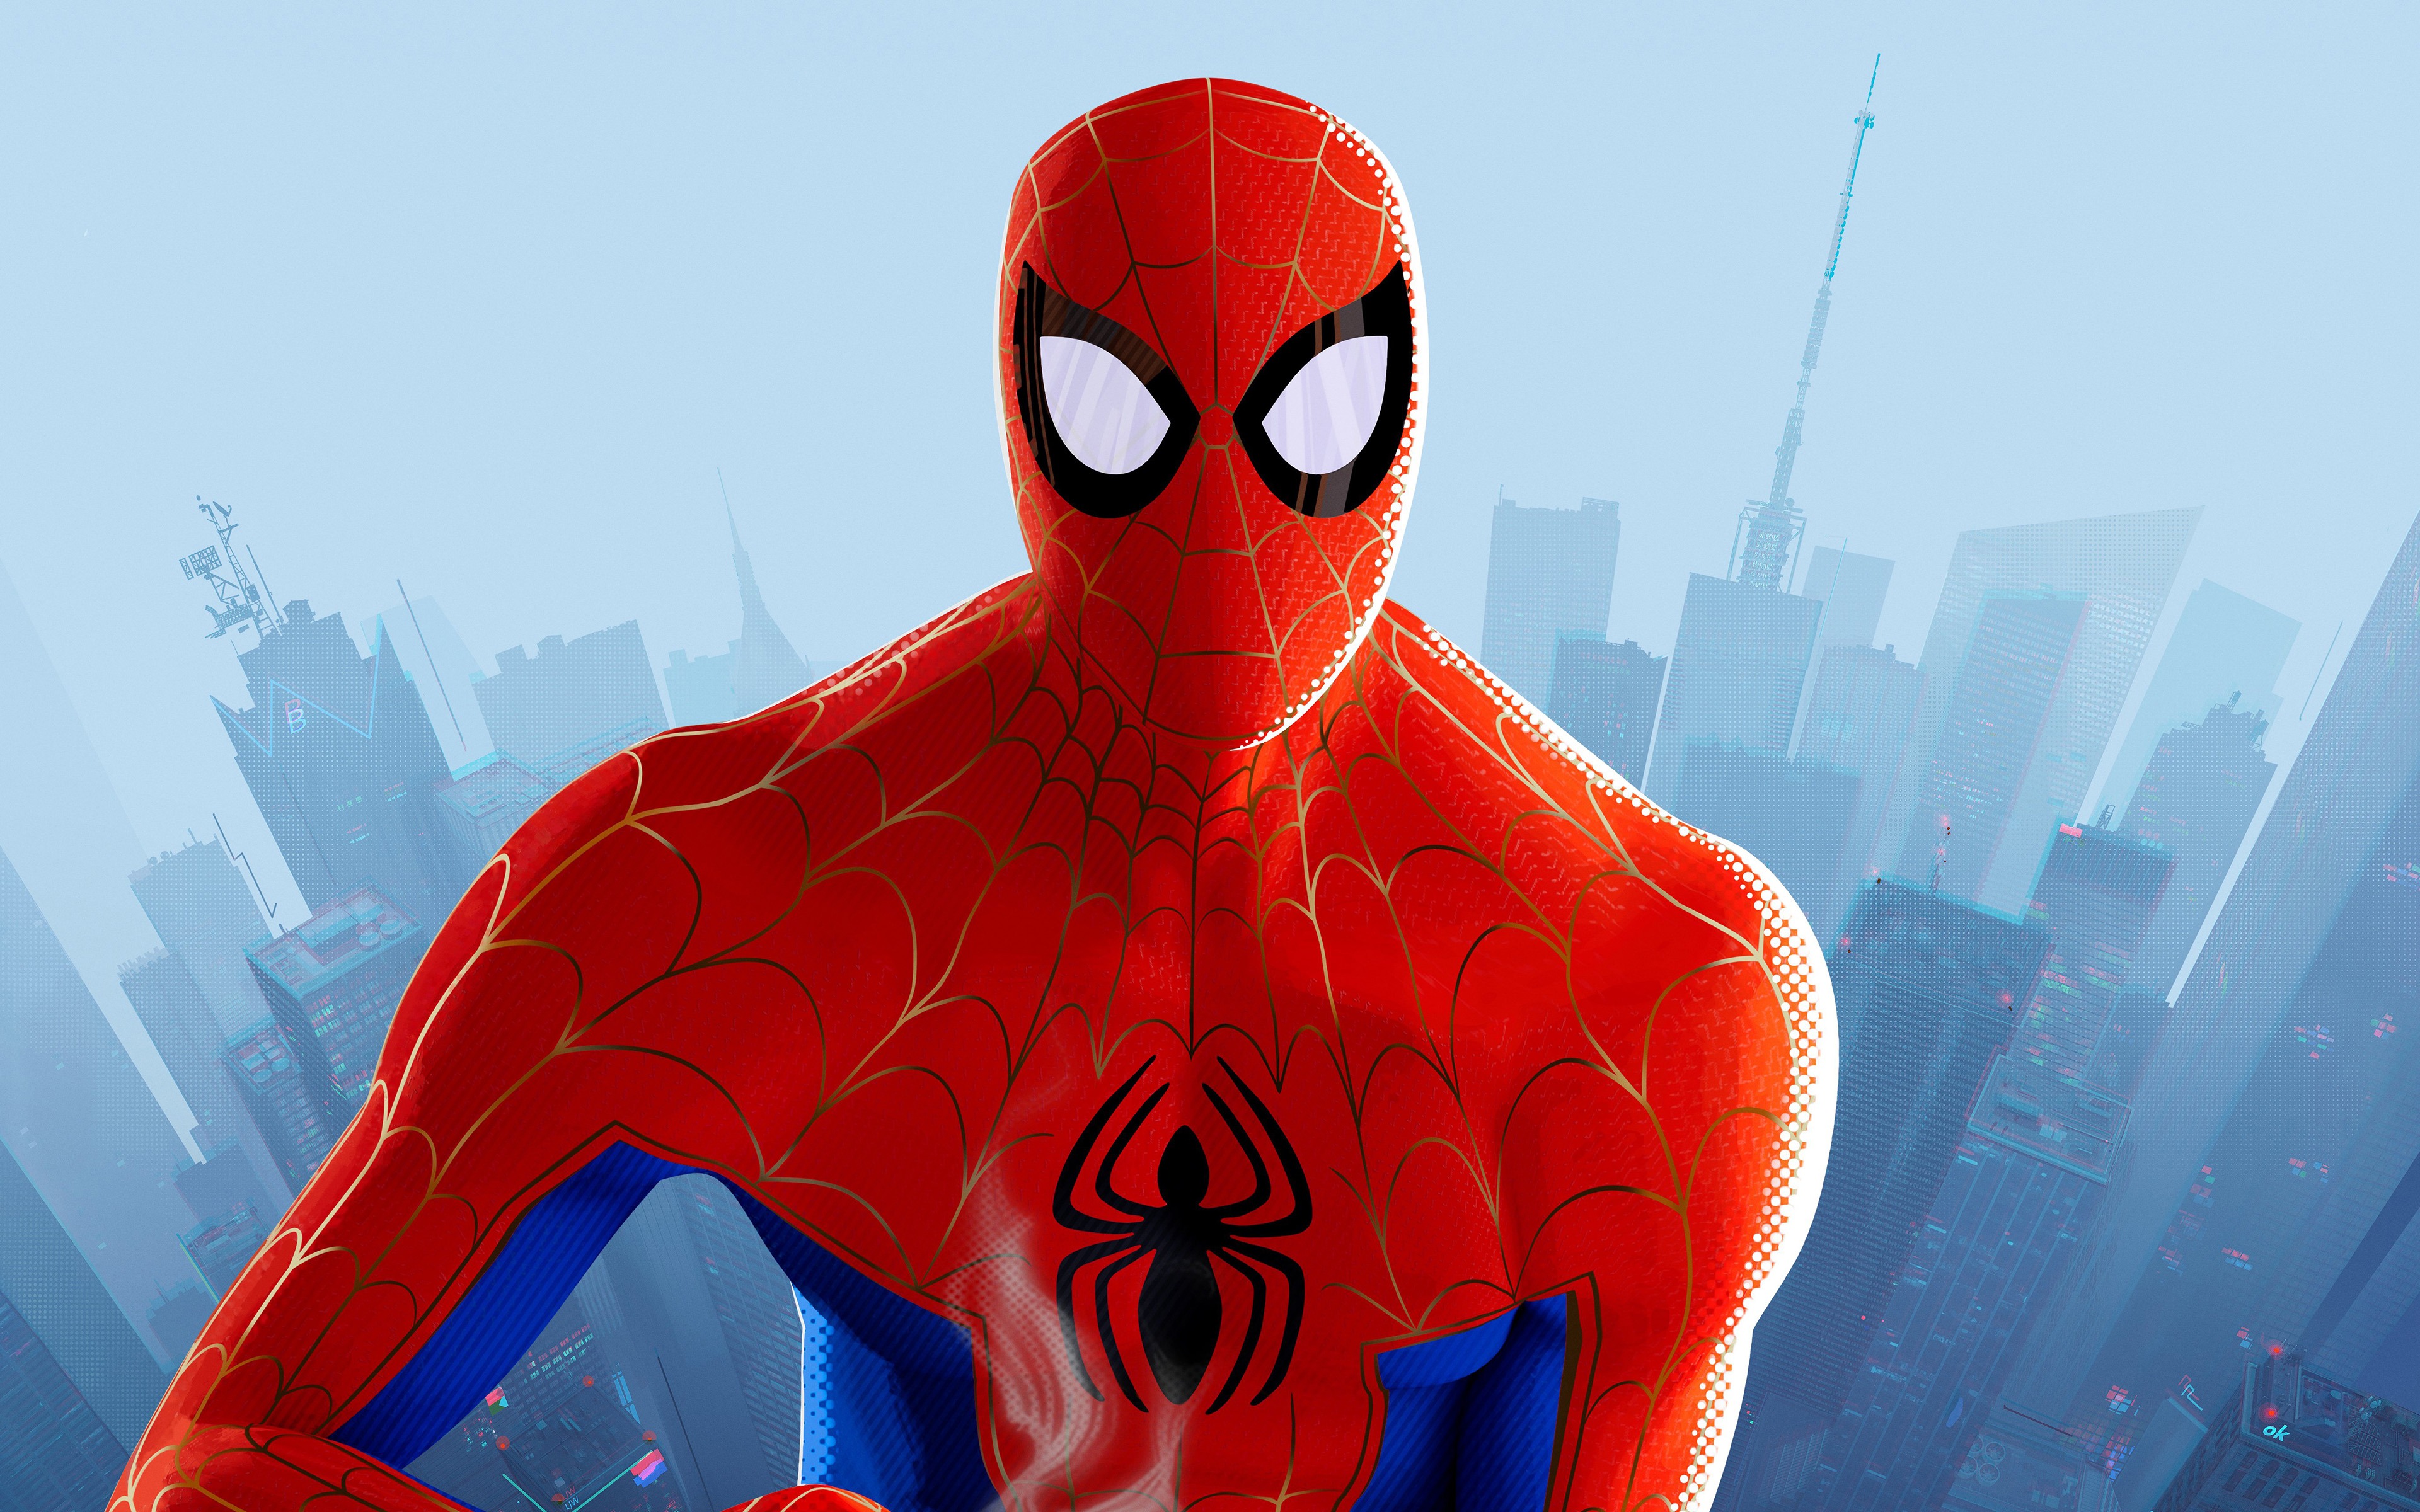 fond d'écran spiderman,homme araignée,super héros,personnage fictif,héros,illustration